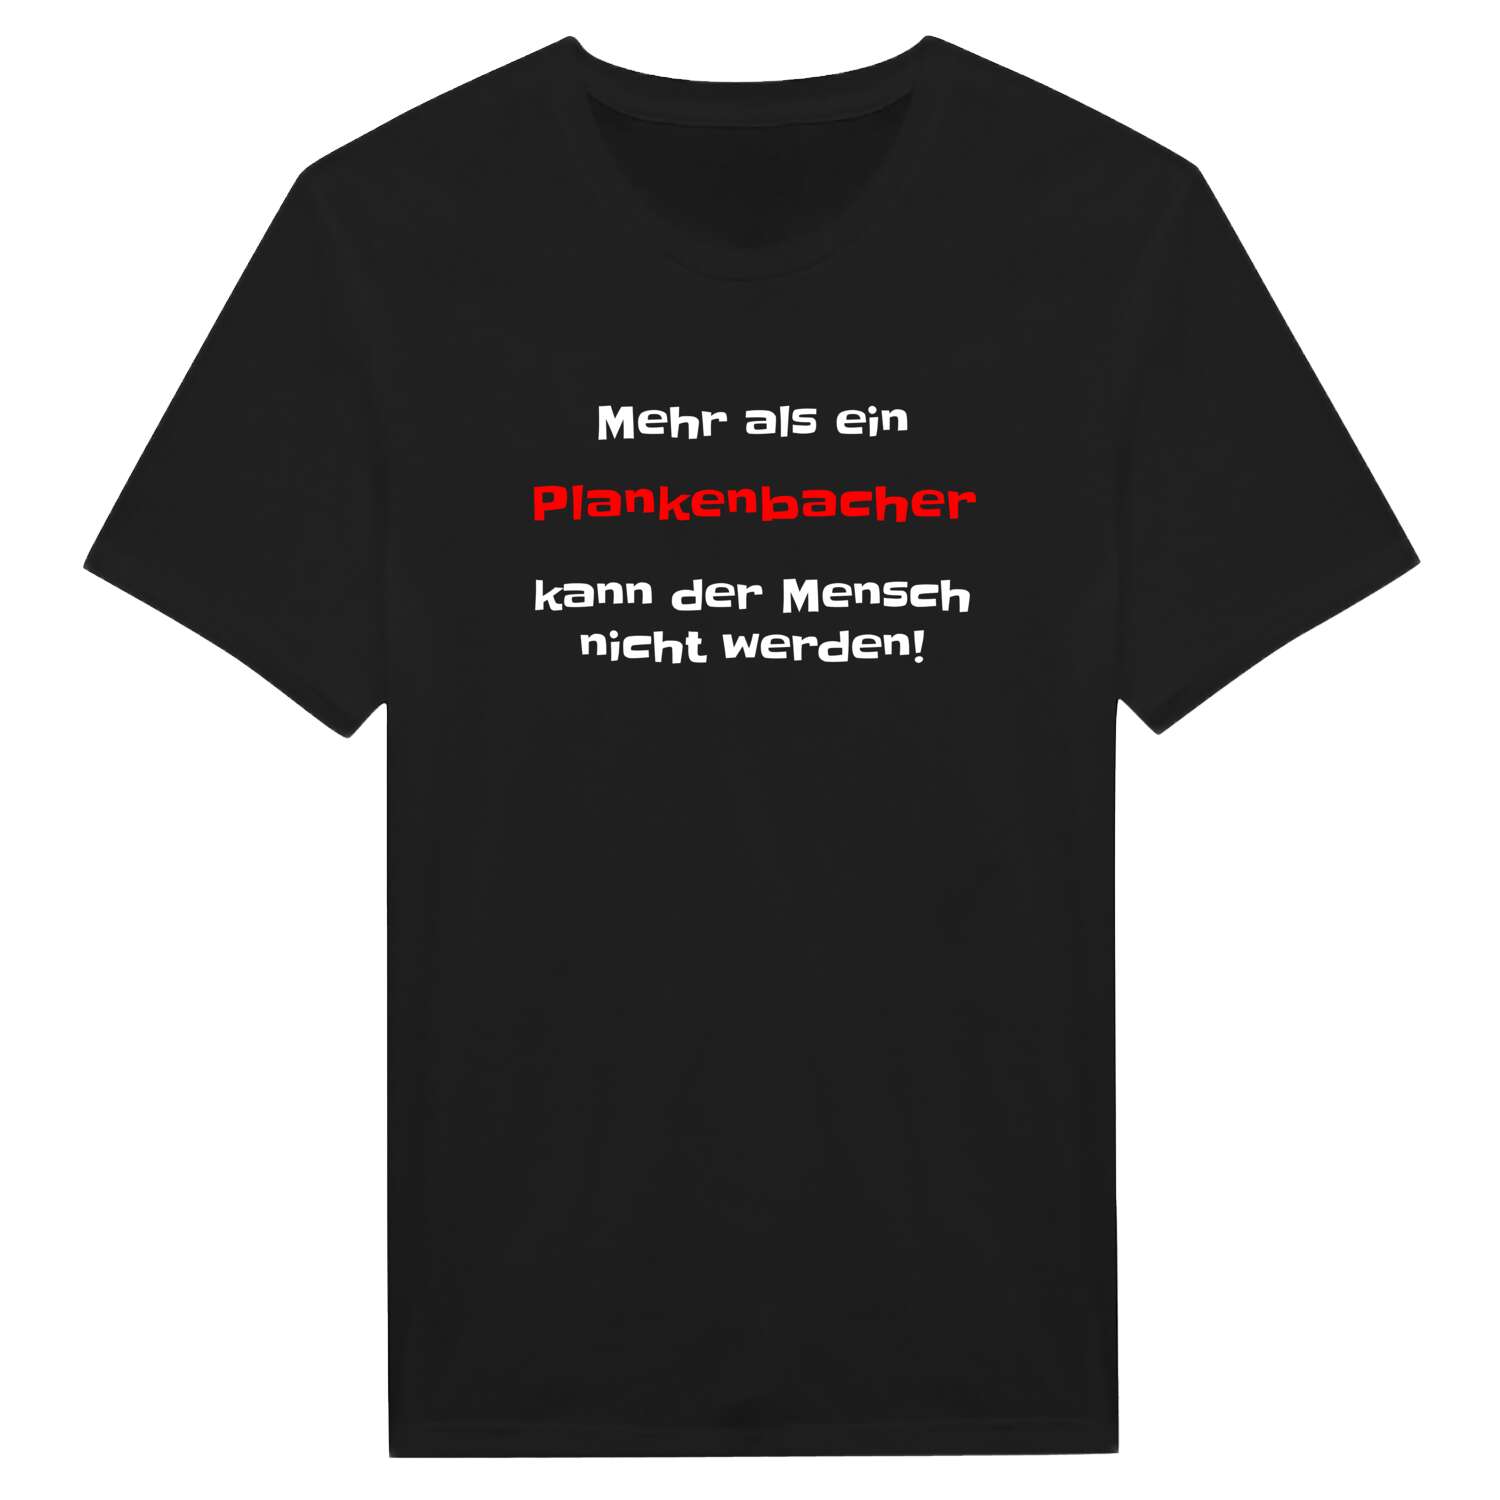 Plankenbach T-Shirt »Mehr als ein«